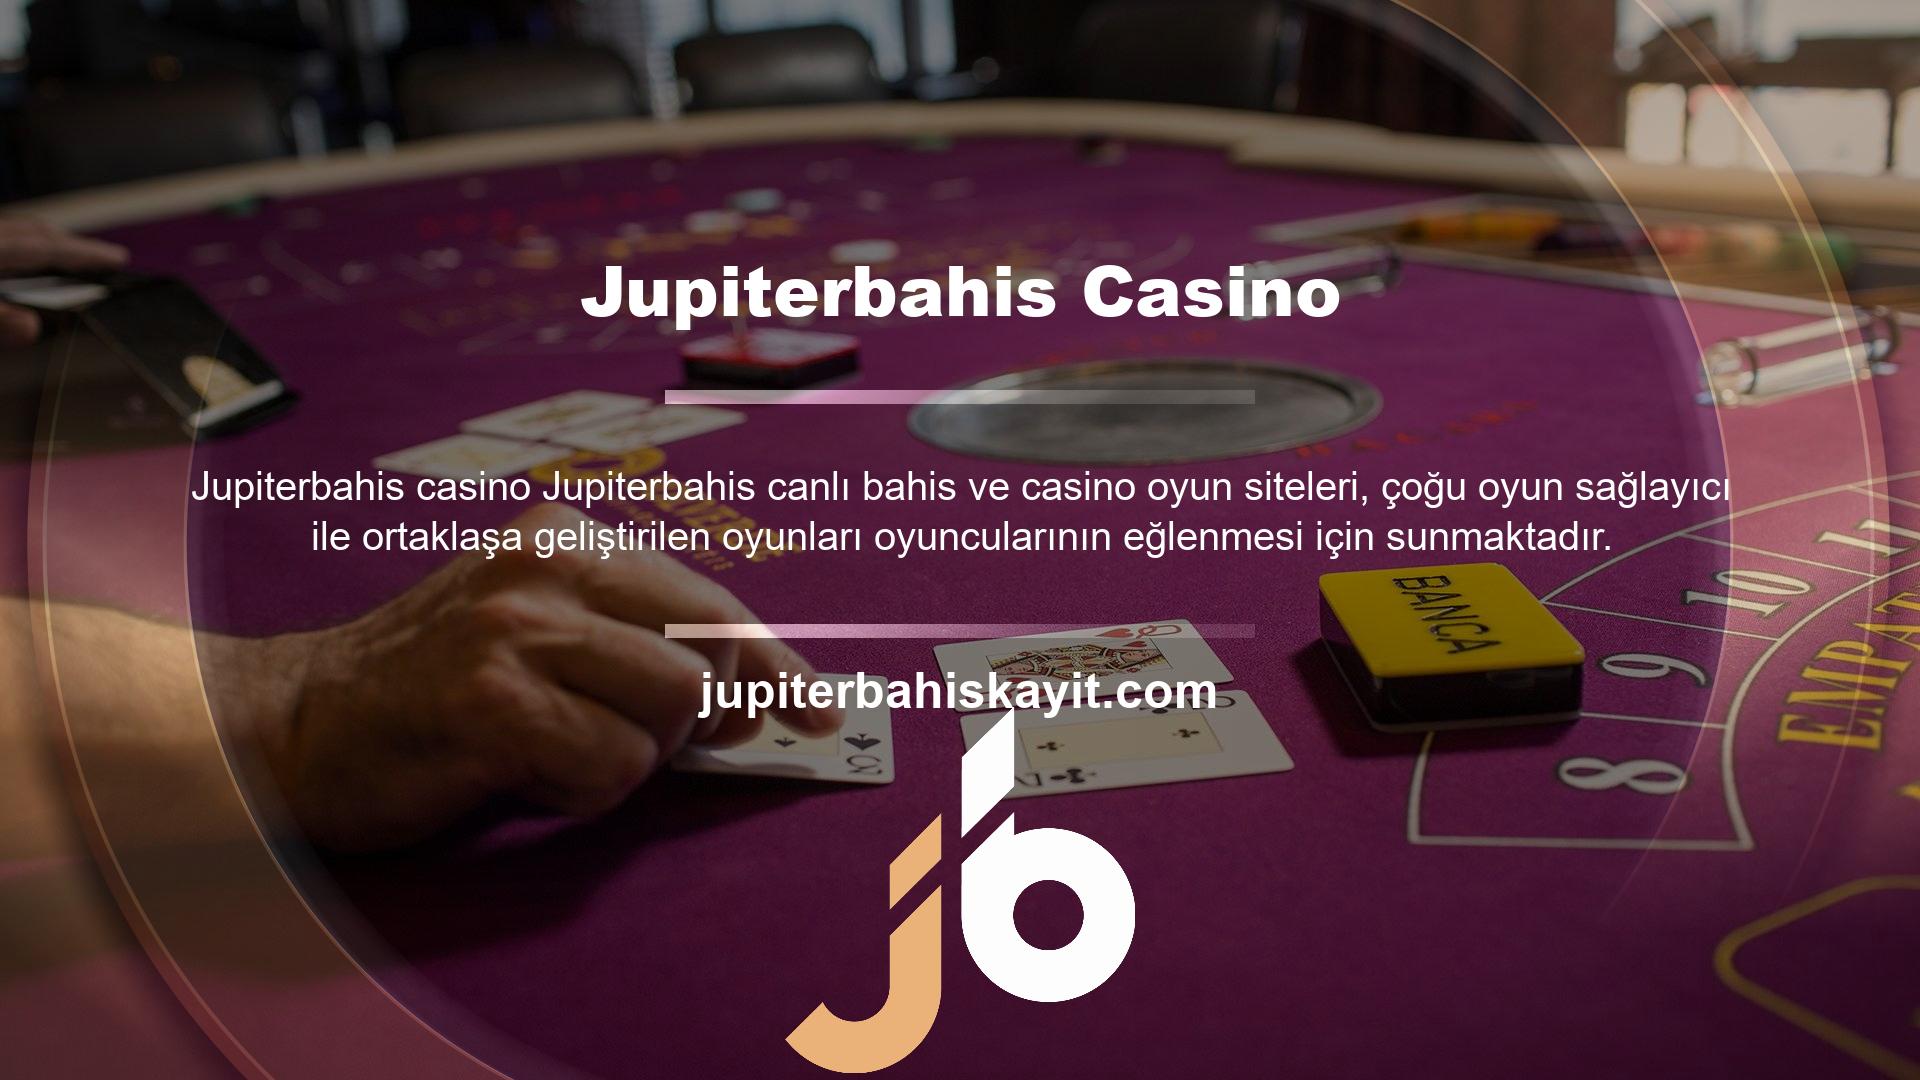 Jupiterbahis Casino, piyasadaki en çeşitli casinodur